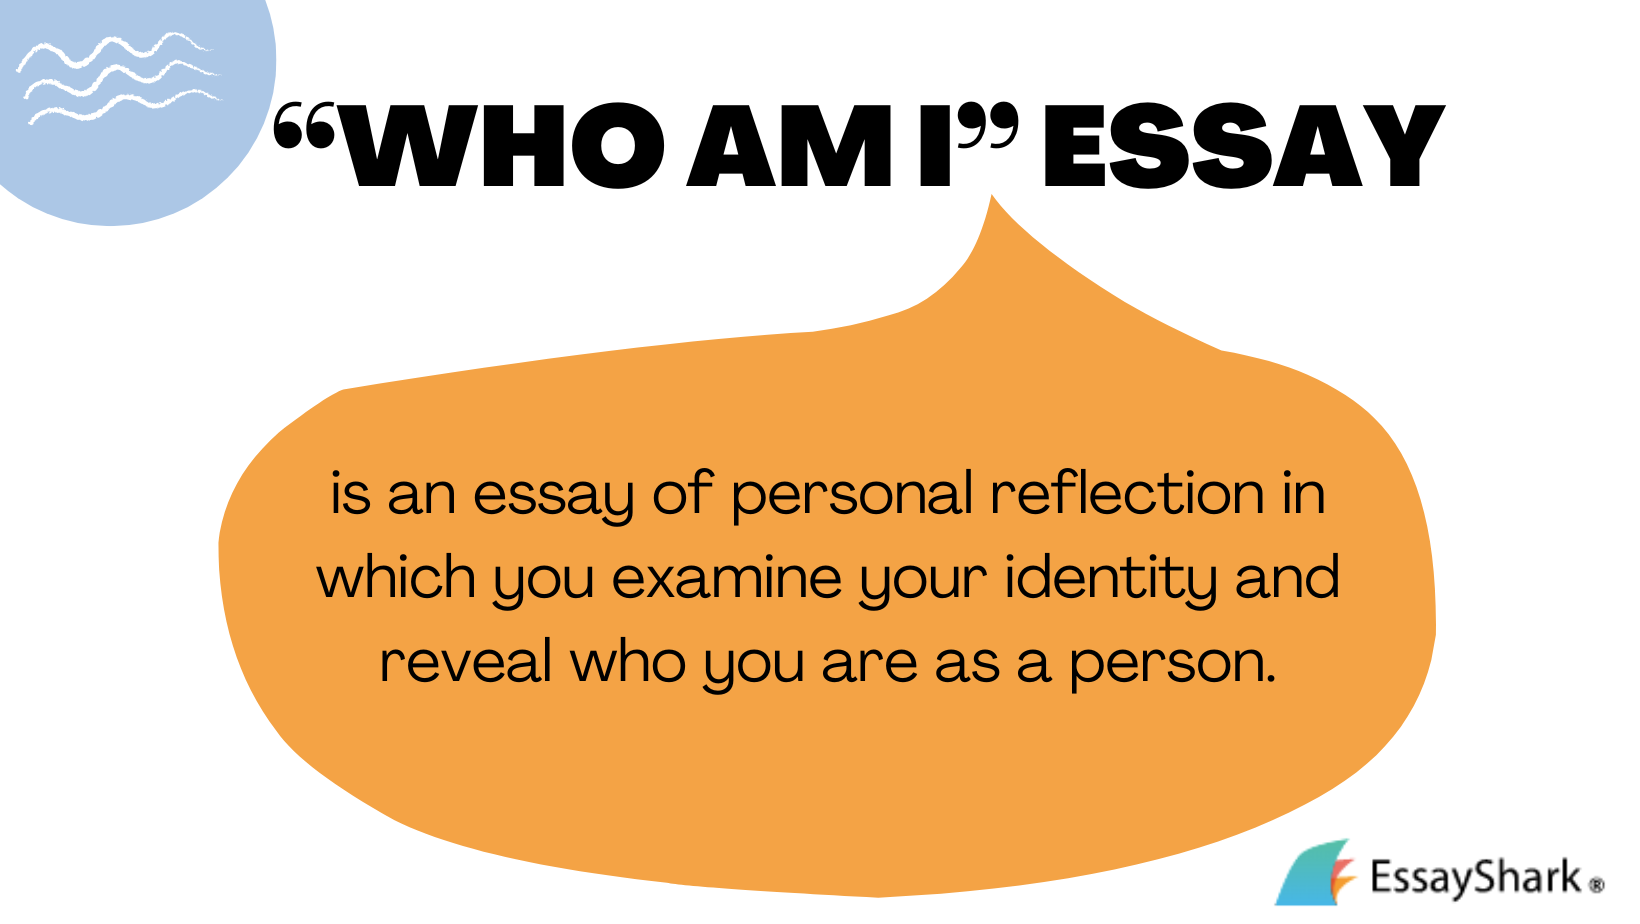 who am i essay sample for neuro exam pdf